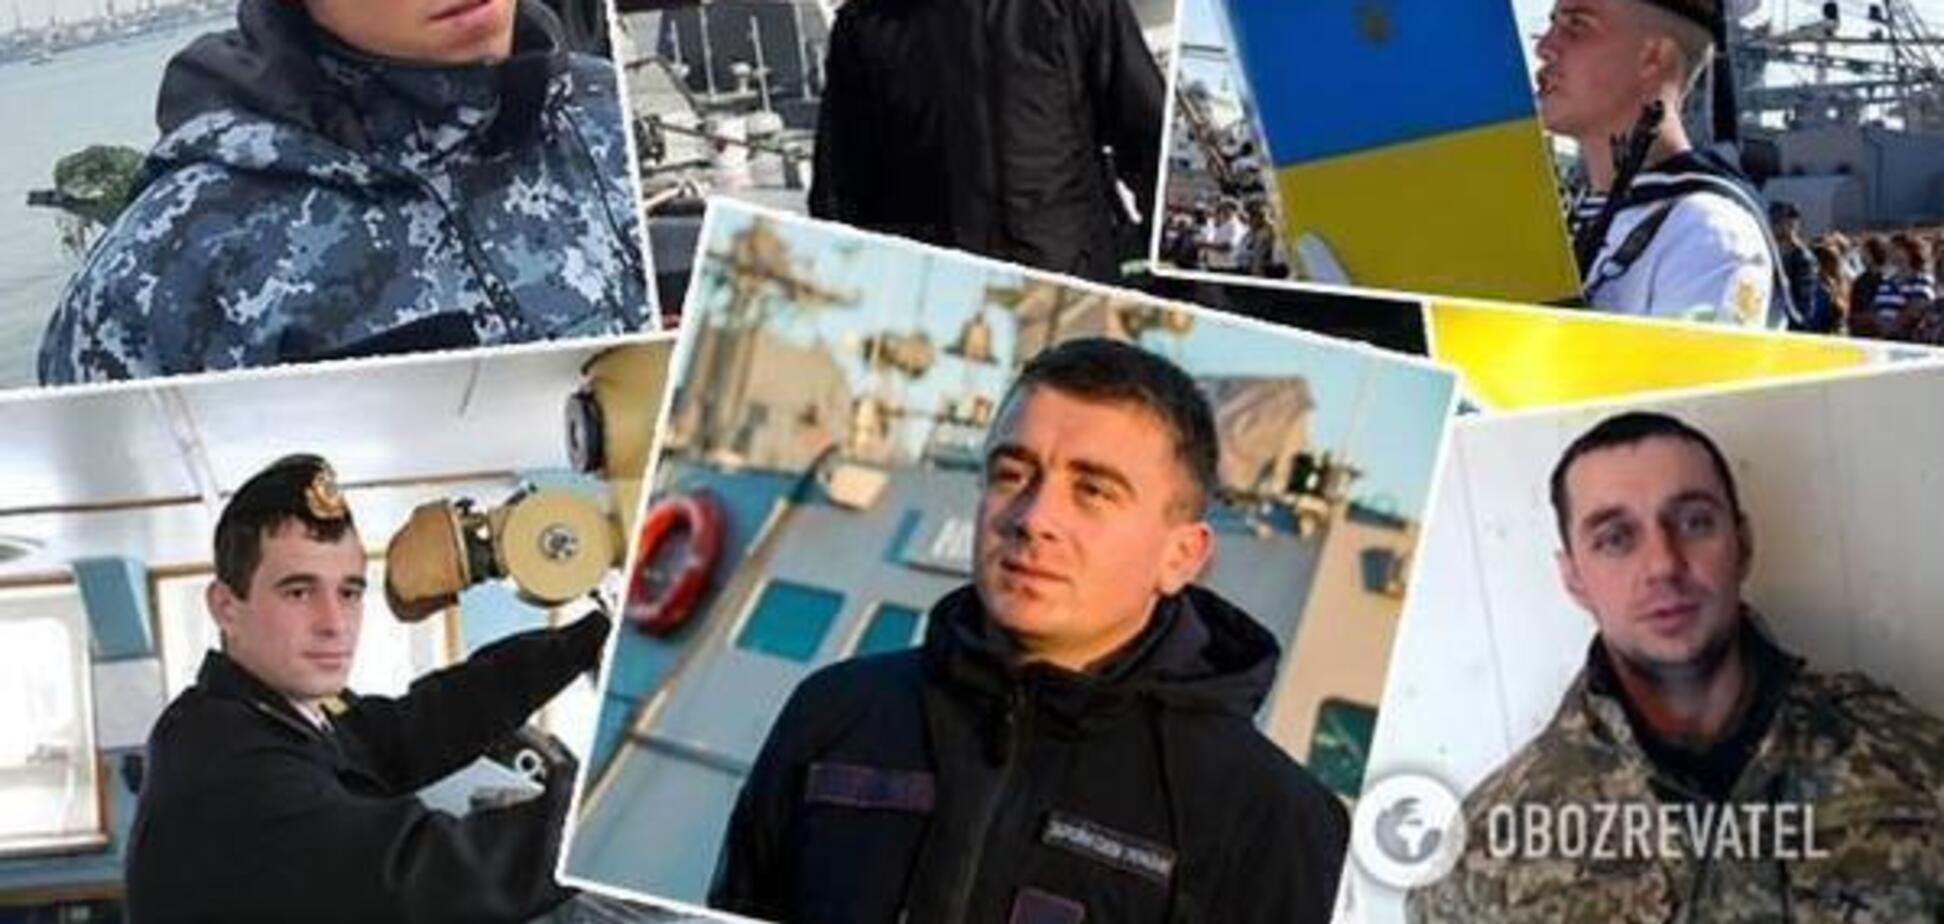 Путин освободит украинских моряков? Песков дал ответ